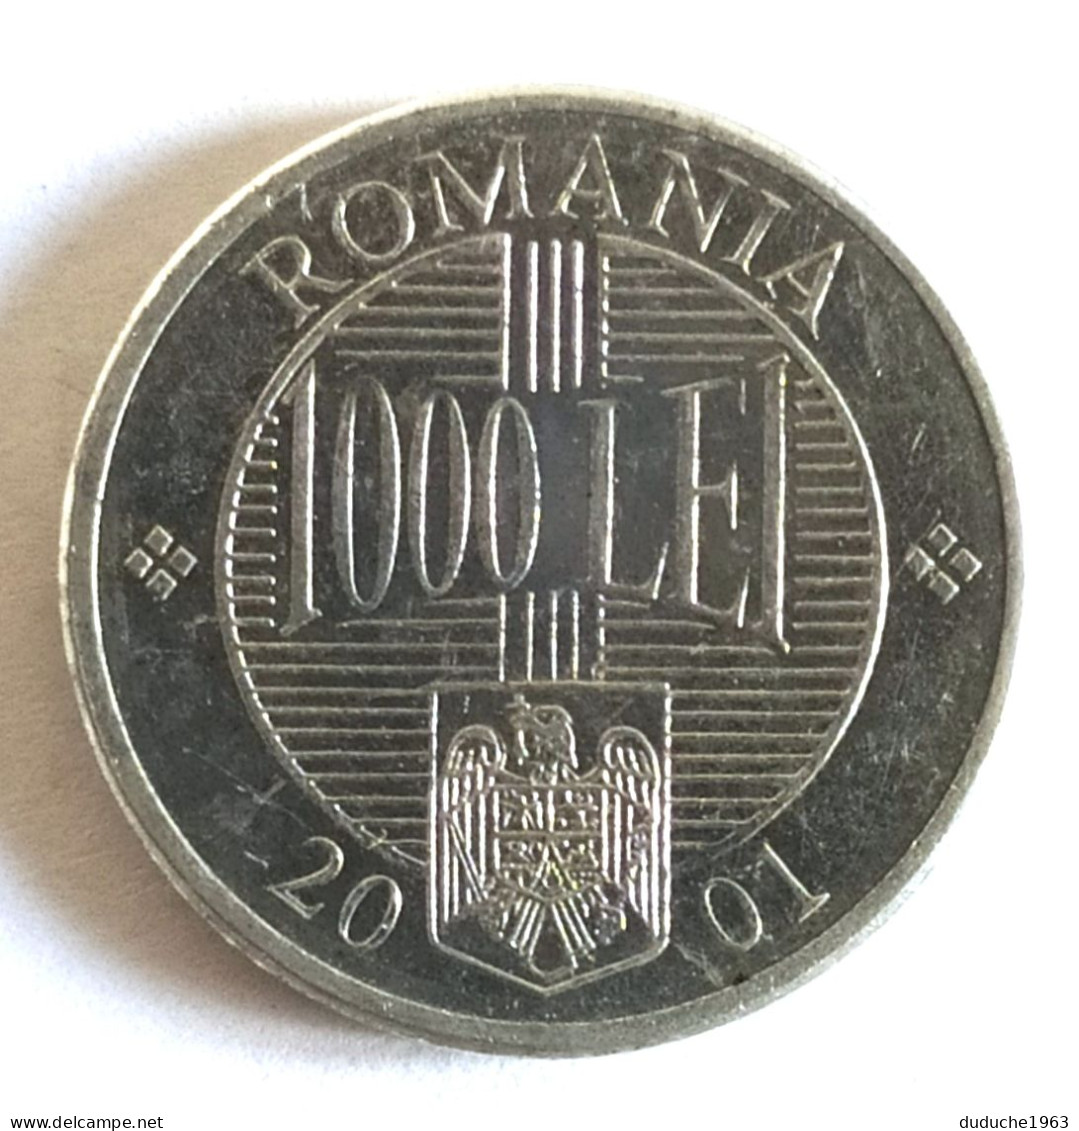 Roumanie - 1000 Lei 2001 - Romania